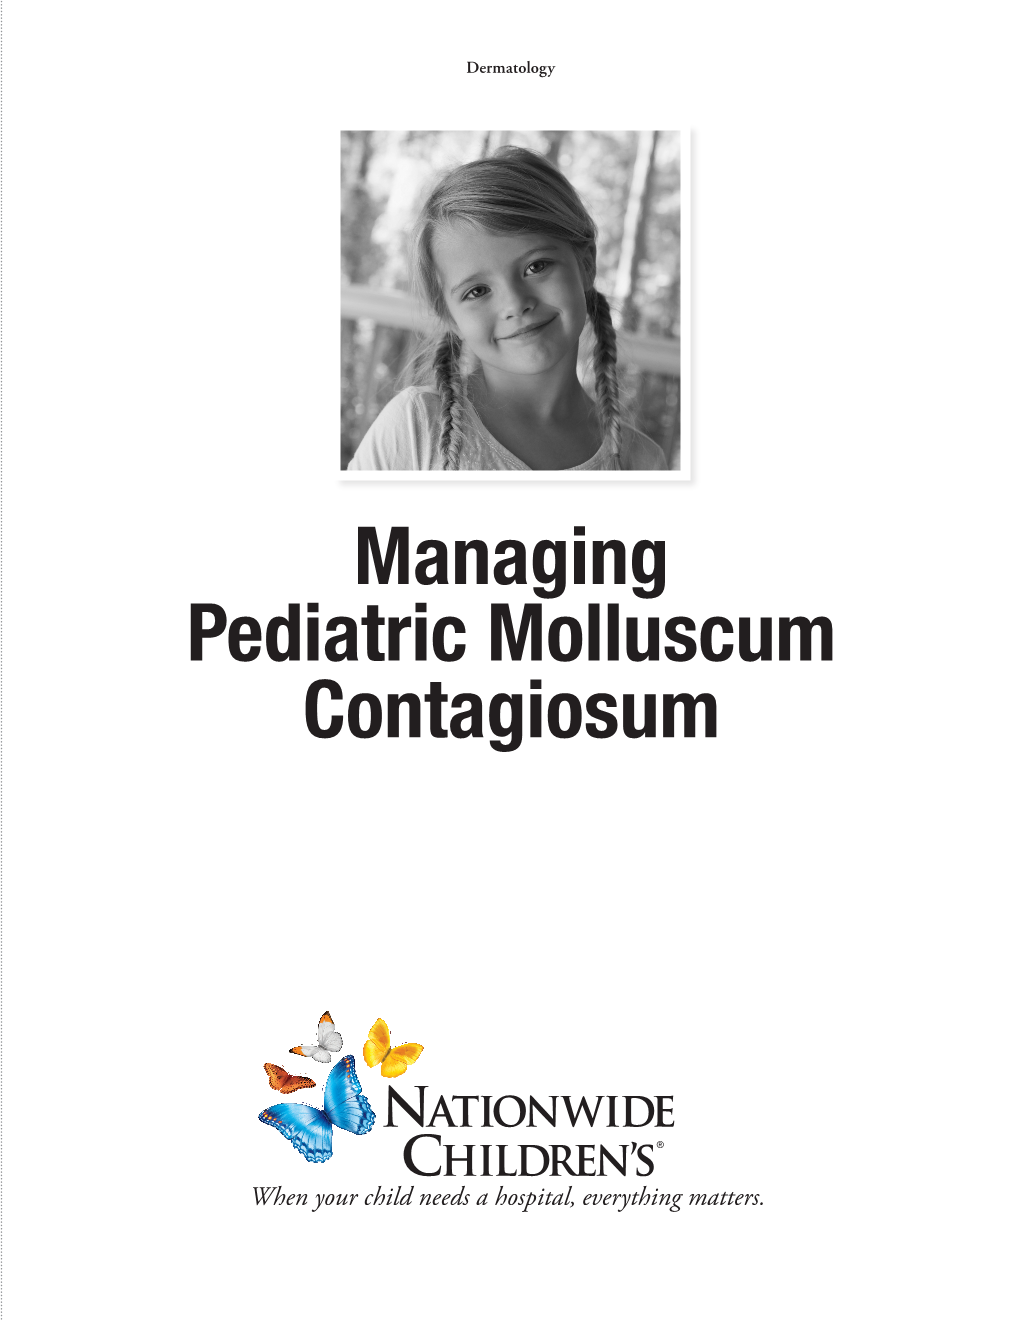 Managing Pediatric Molluscum Contagiosum PEDIATRIC MOLLUSCUM CONTAGIOSUM